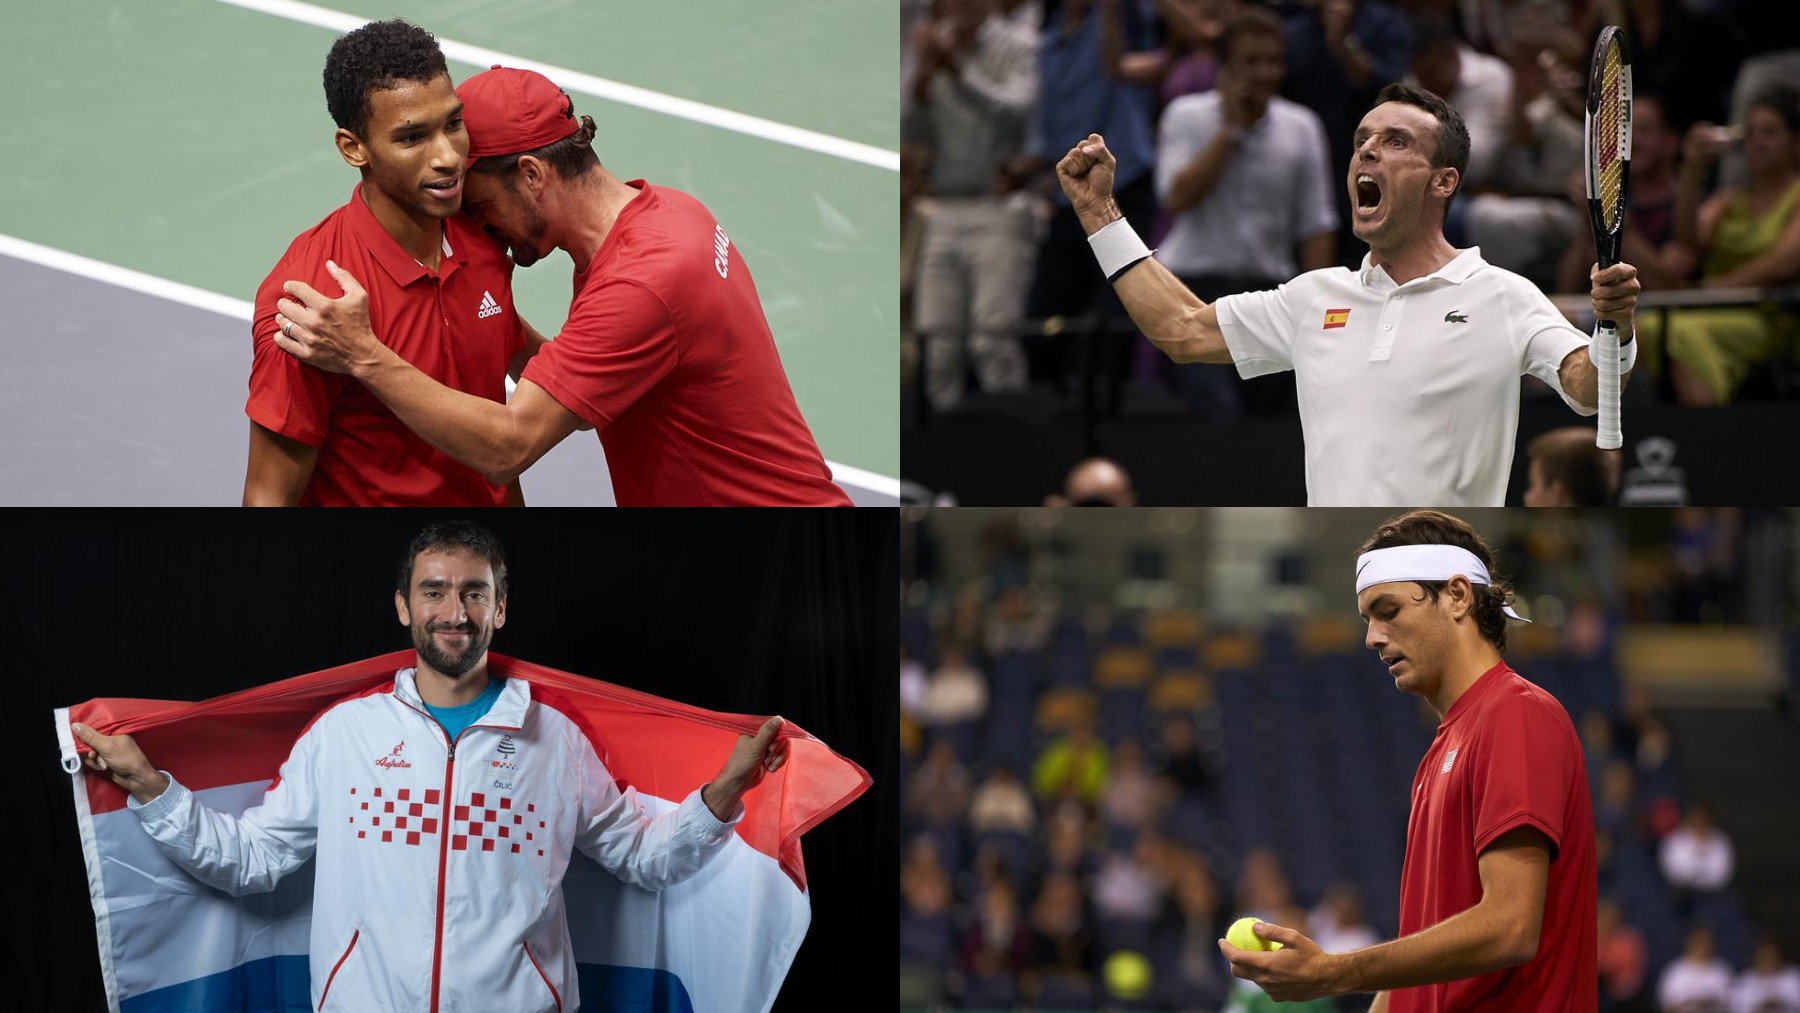 Algunos de los grandes nombres de una Copa Davis sin favoritos. (Kosmos)